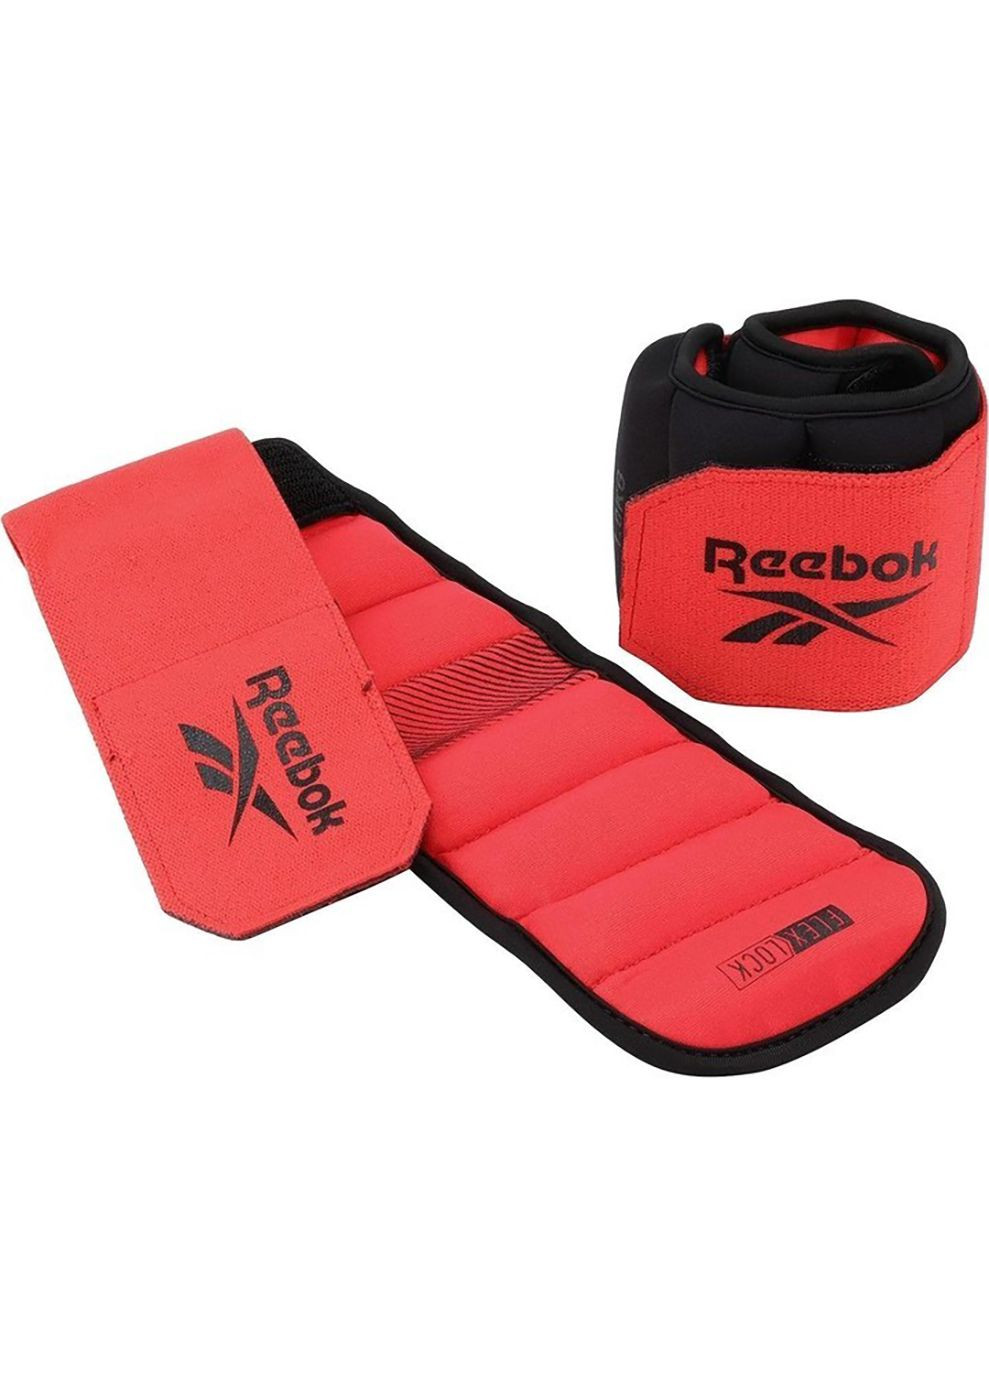 Утяжелители щиколотки Flexlock Ankle Weights черный, красный Уни 1 кг Reebok (268832096)